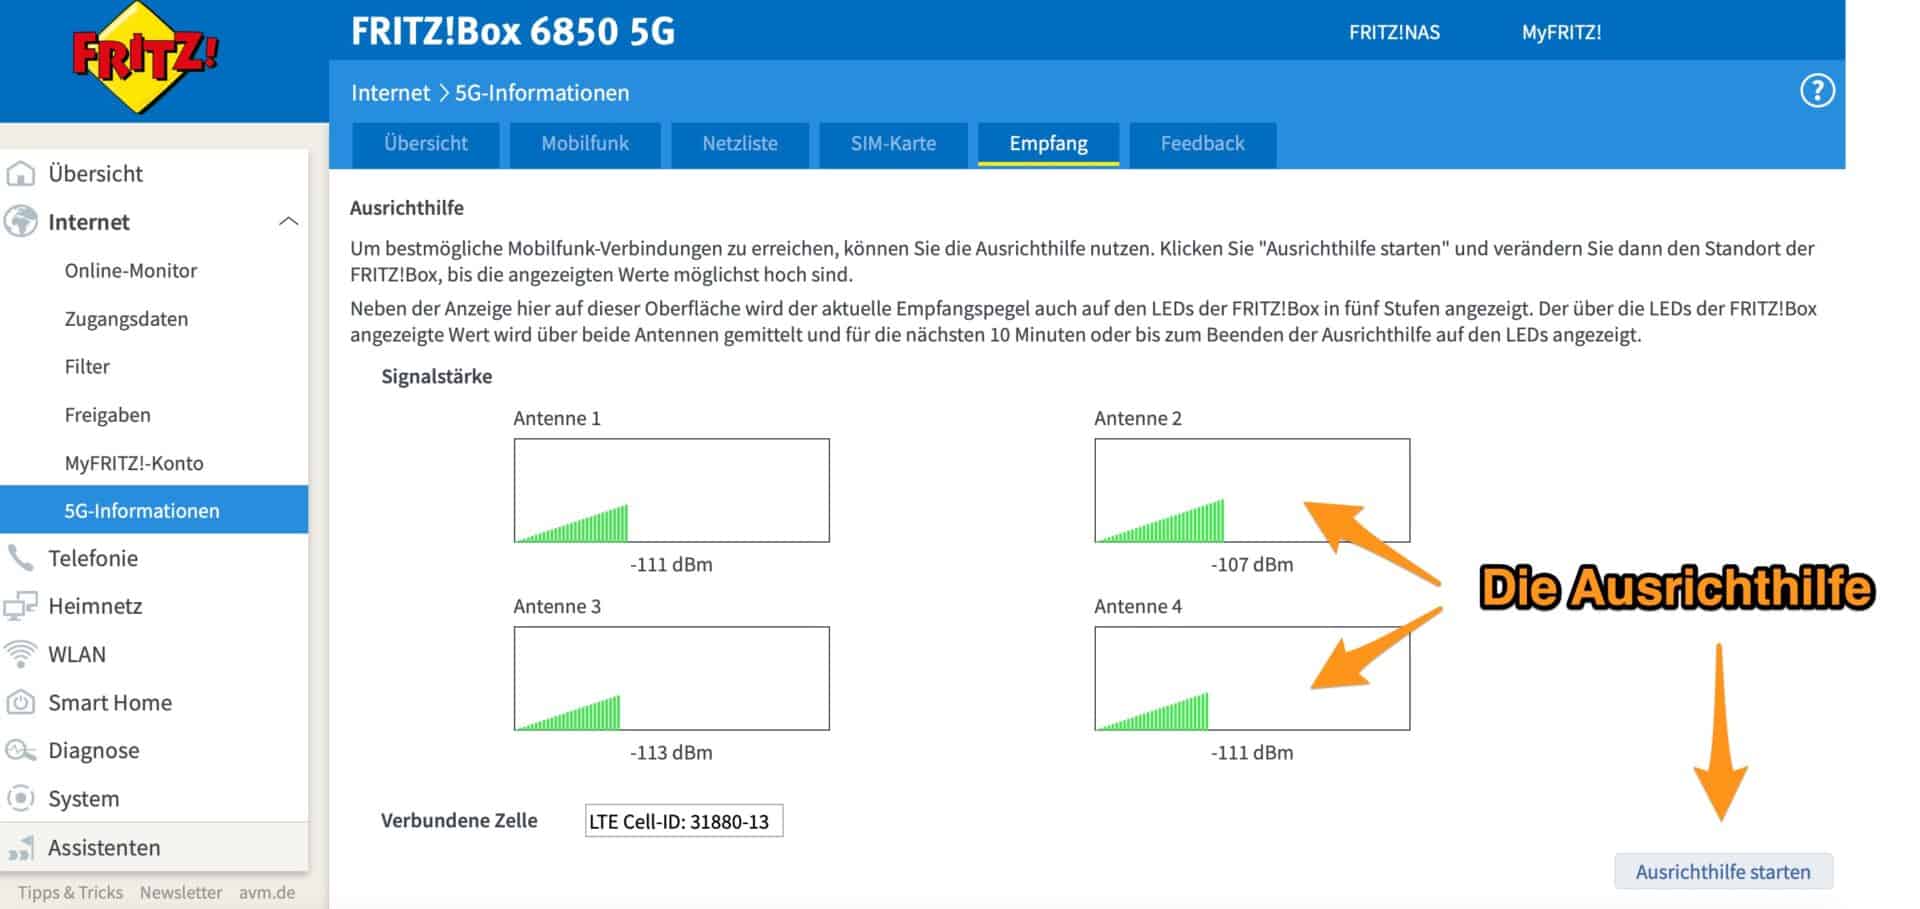 FRITZ-Box-6850-5G-Die-Ausrichthilfe-fuer-bestes-mobiles-Internet